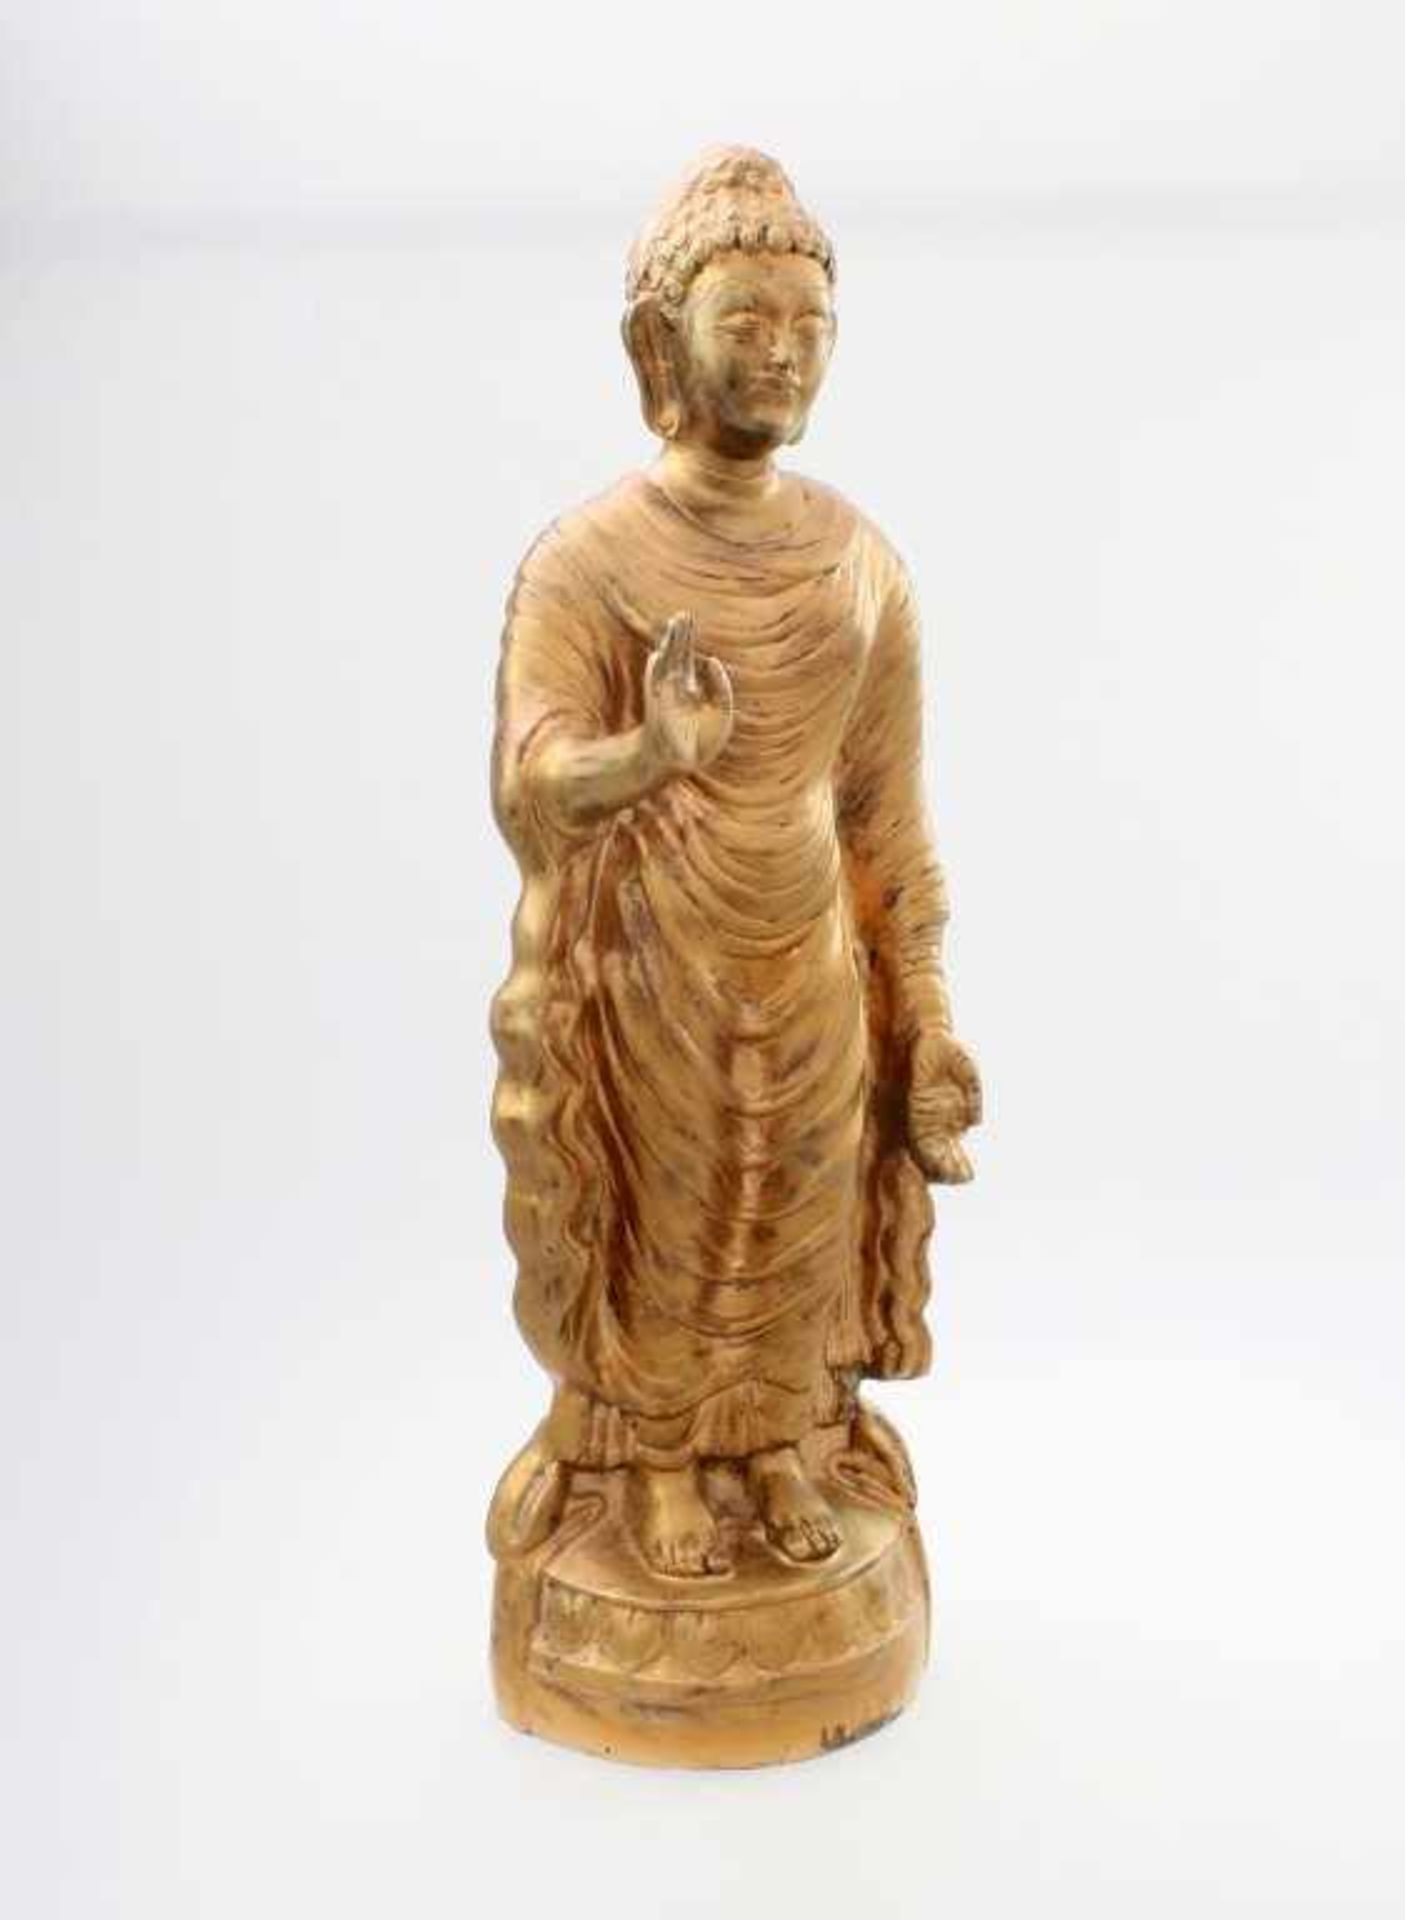 Stehender Buddha - Indien Die Hand zur Lehre erhoben, auf runder Plinthe mit umlaufendem